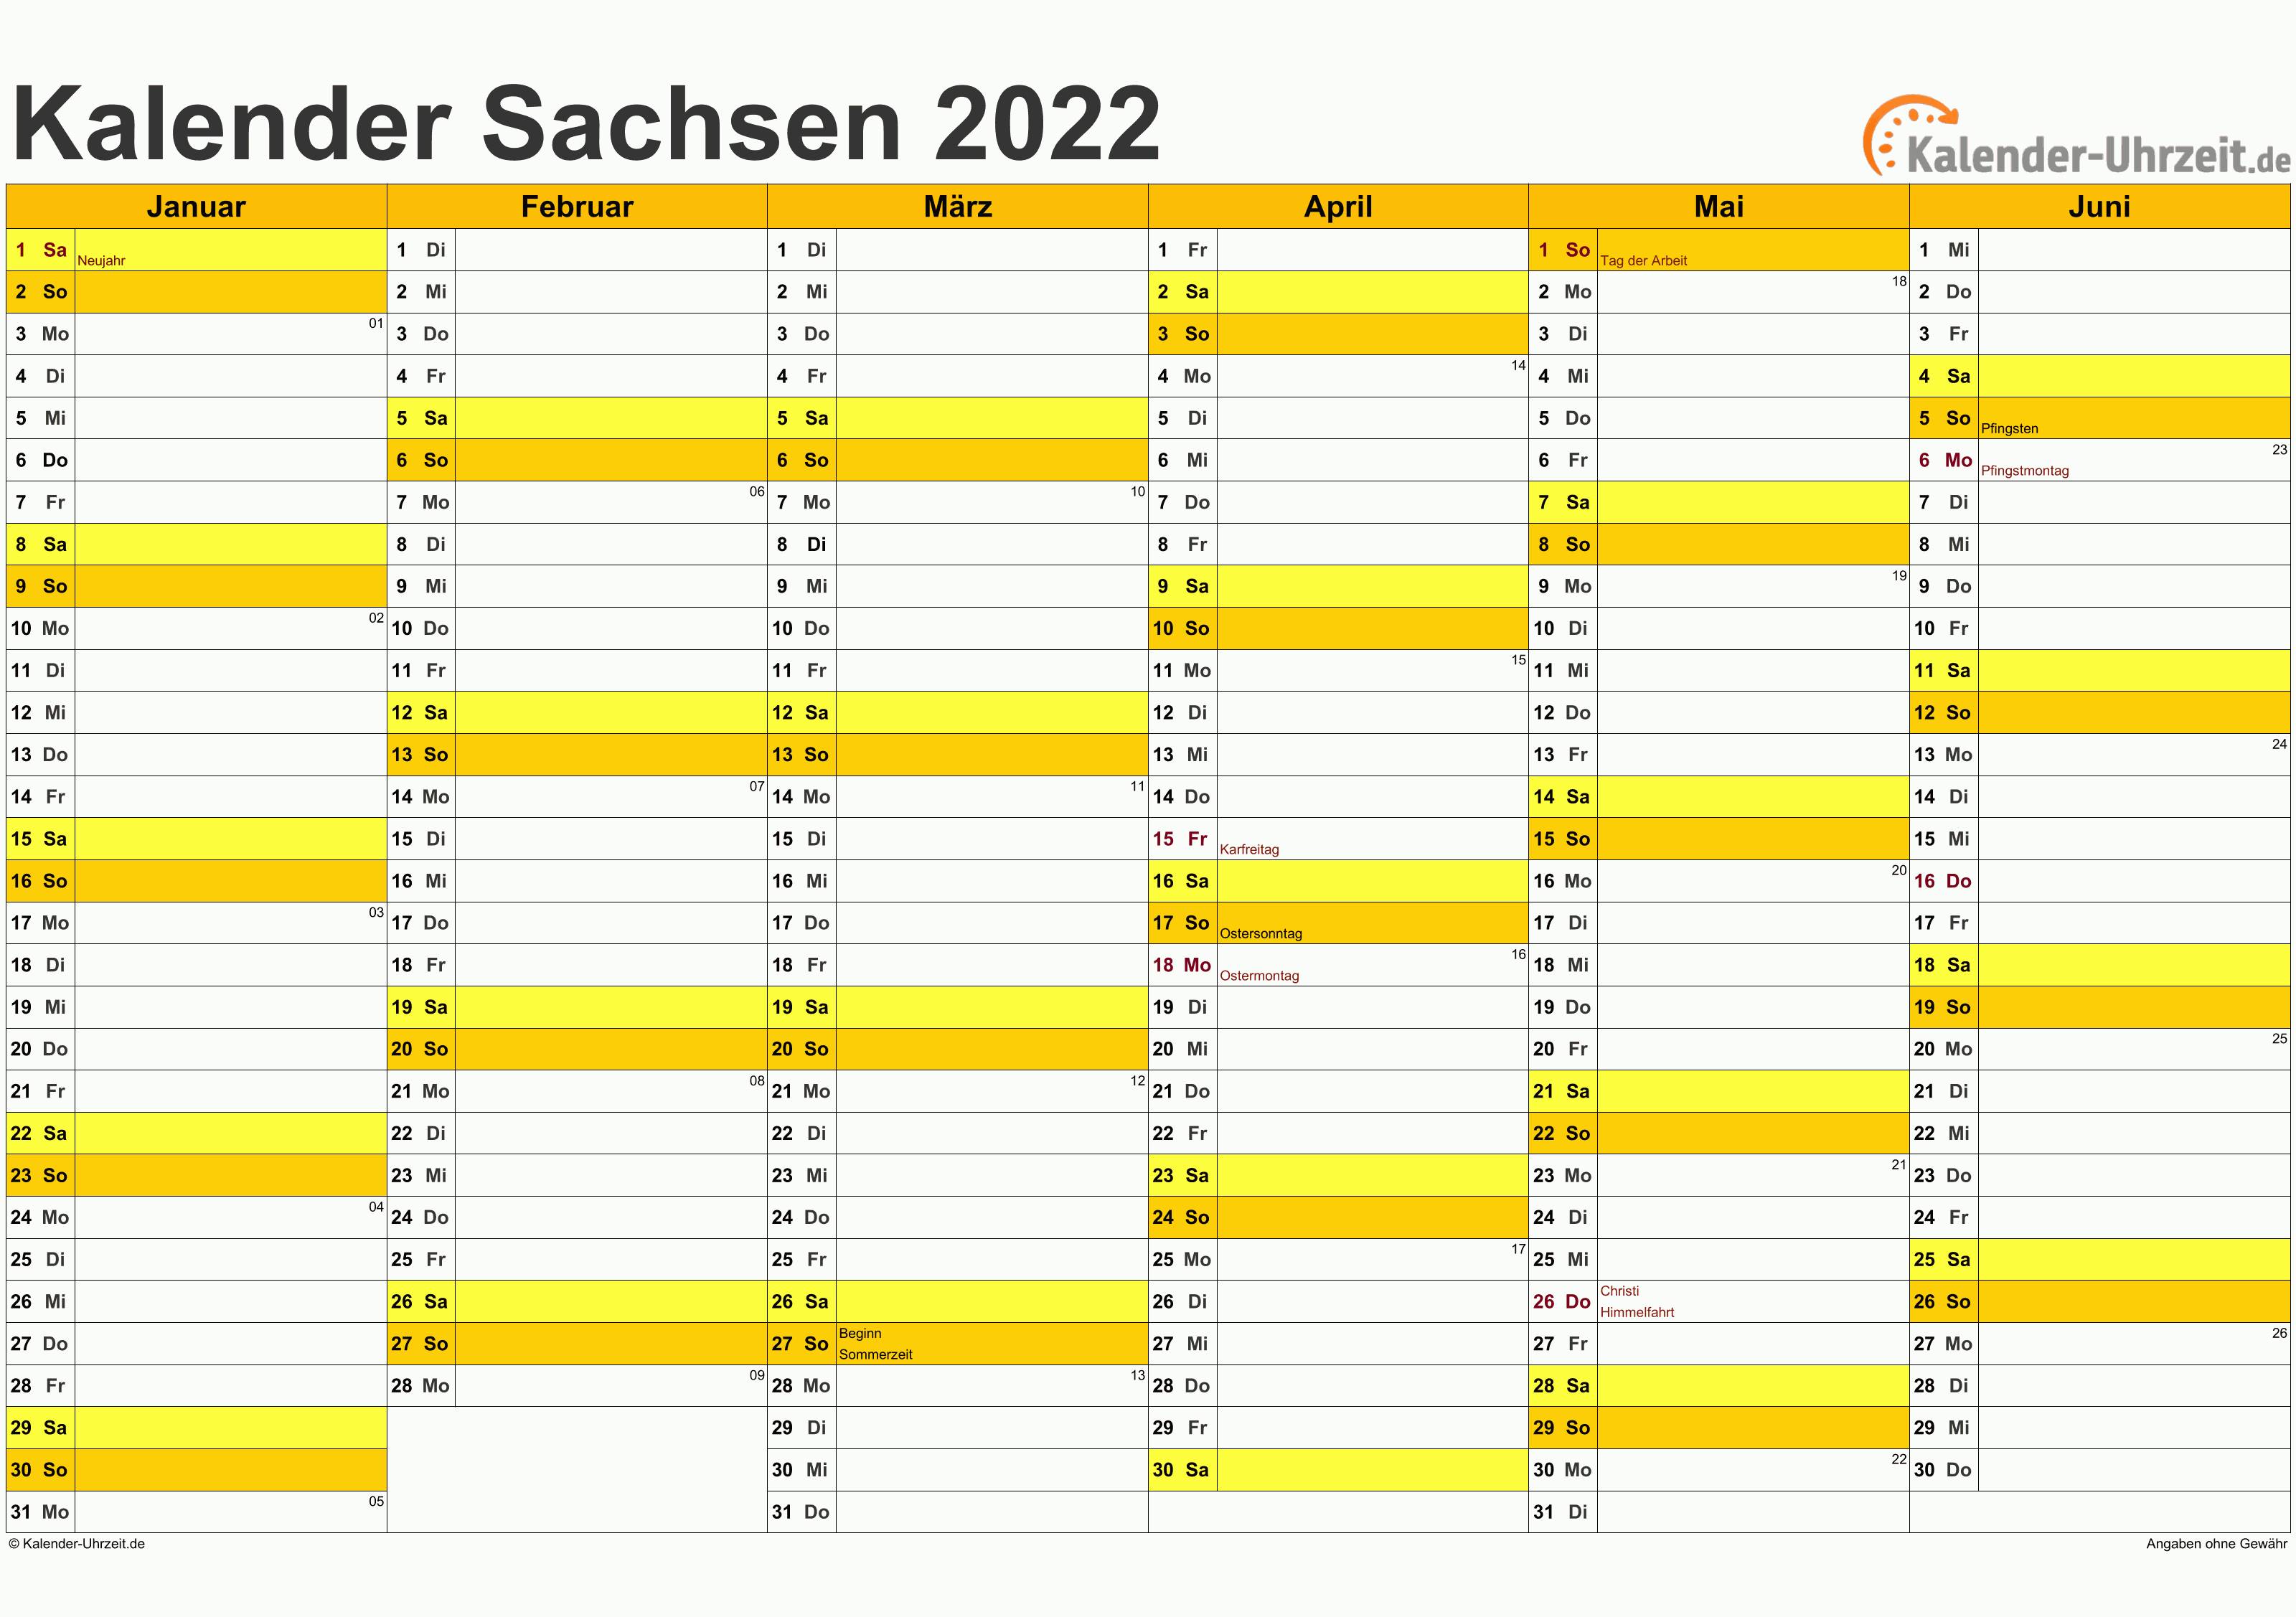 Sachsen Kalender 2022 mit Feiertagen - quer-zweiseitig